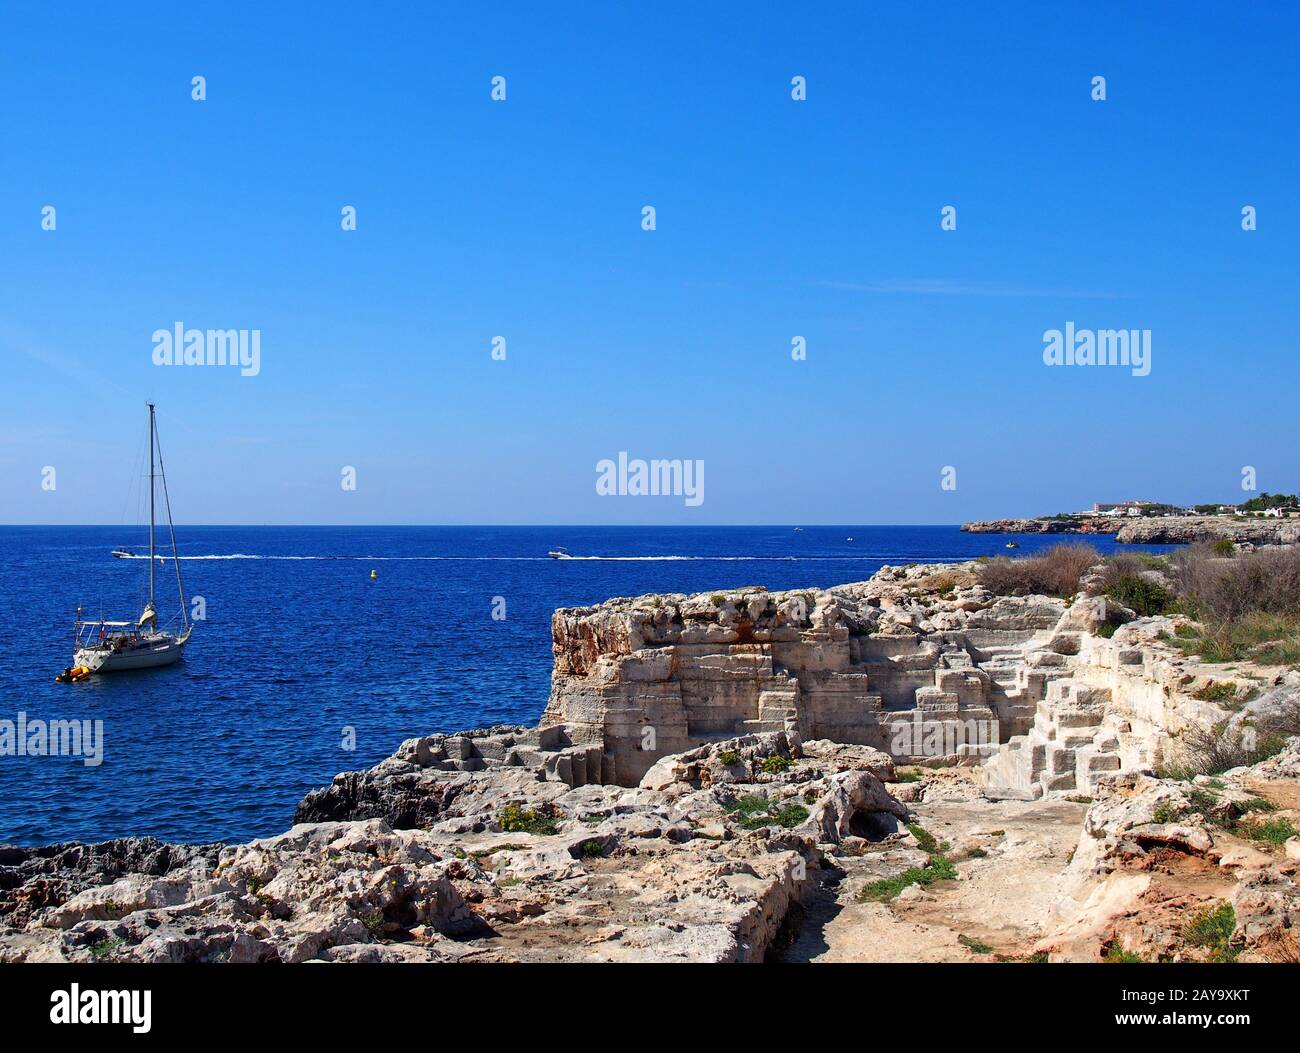 Una scena costiera con uno yacht in un mare mediterraneo illuminato dal sole blu vicino ciutadella menorca Foto Stock